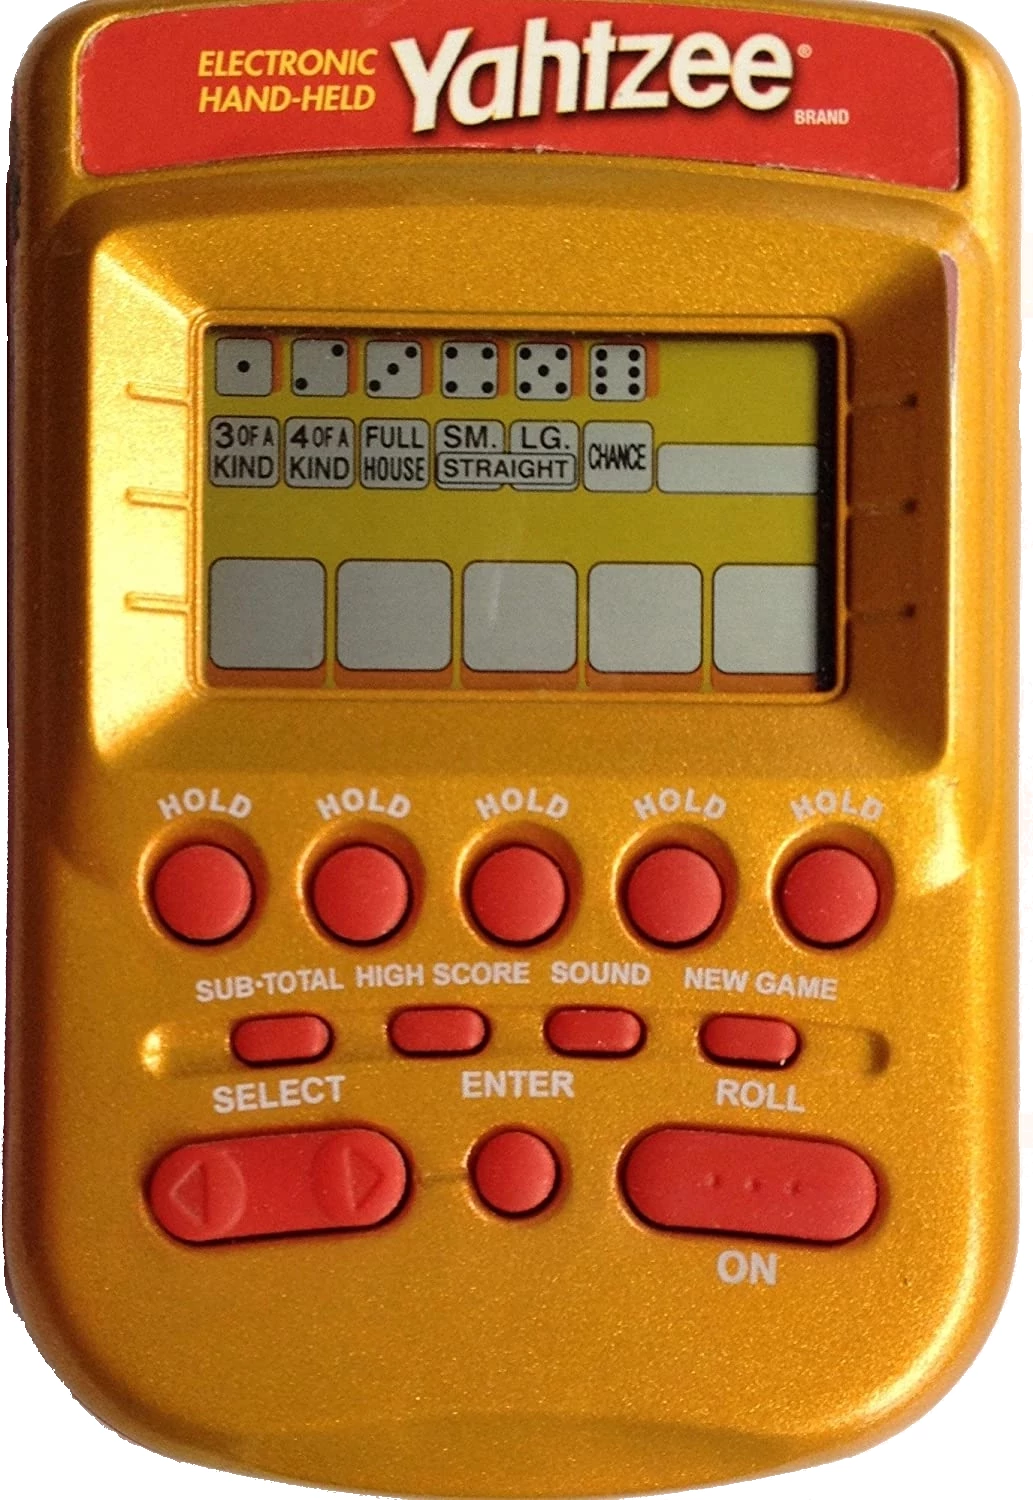 2004 Handheld Electronic Yahtzee